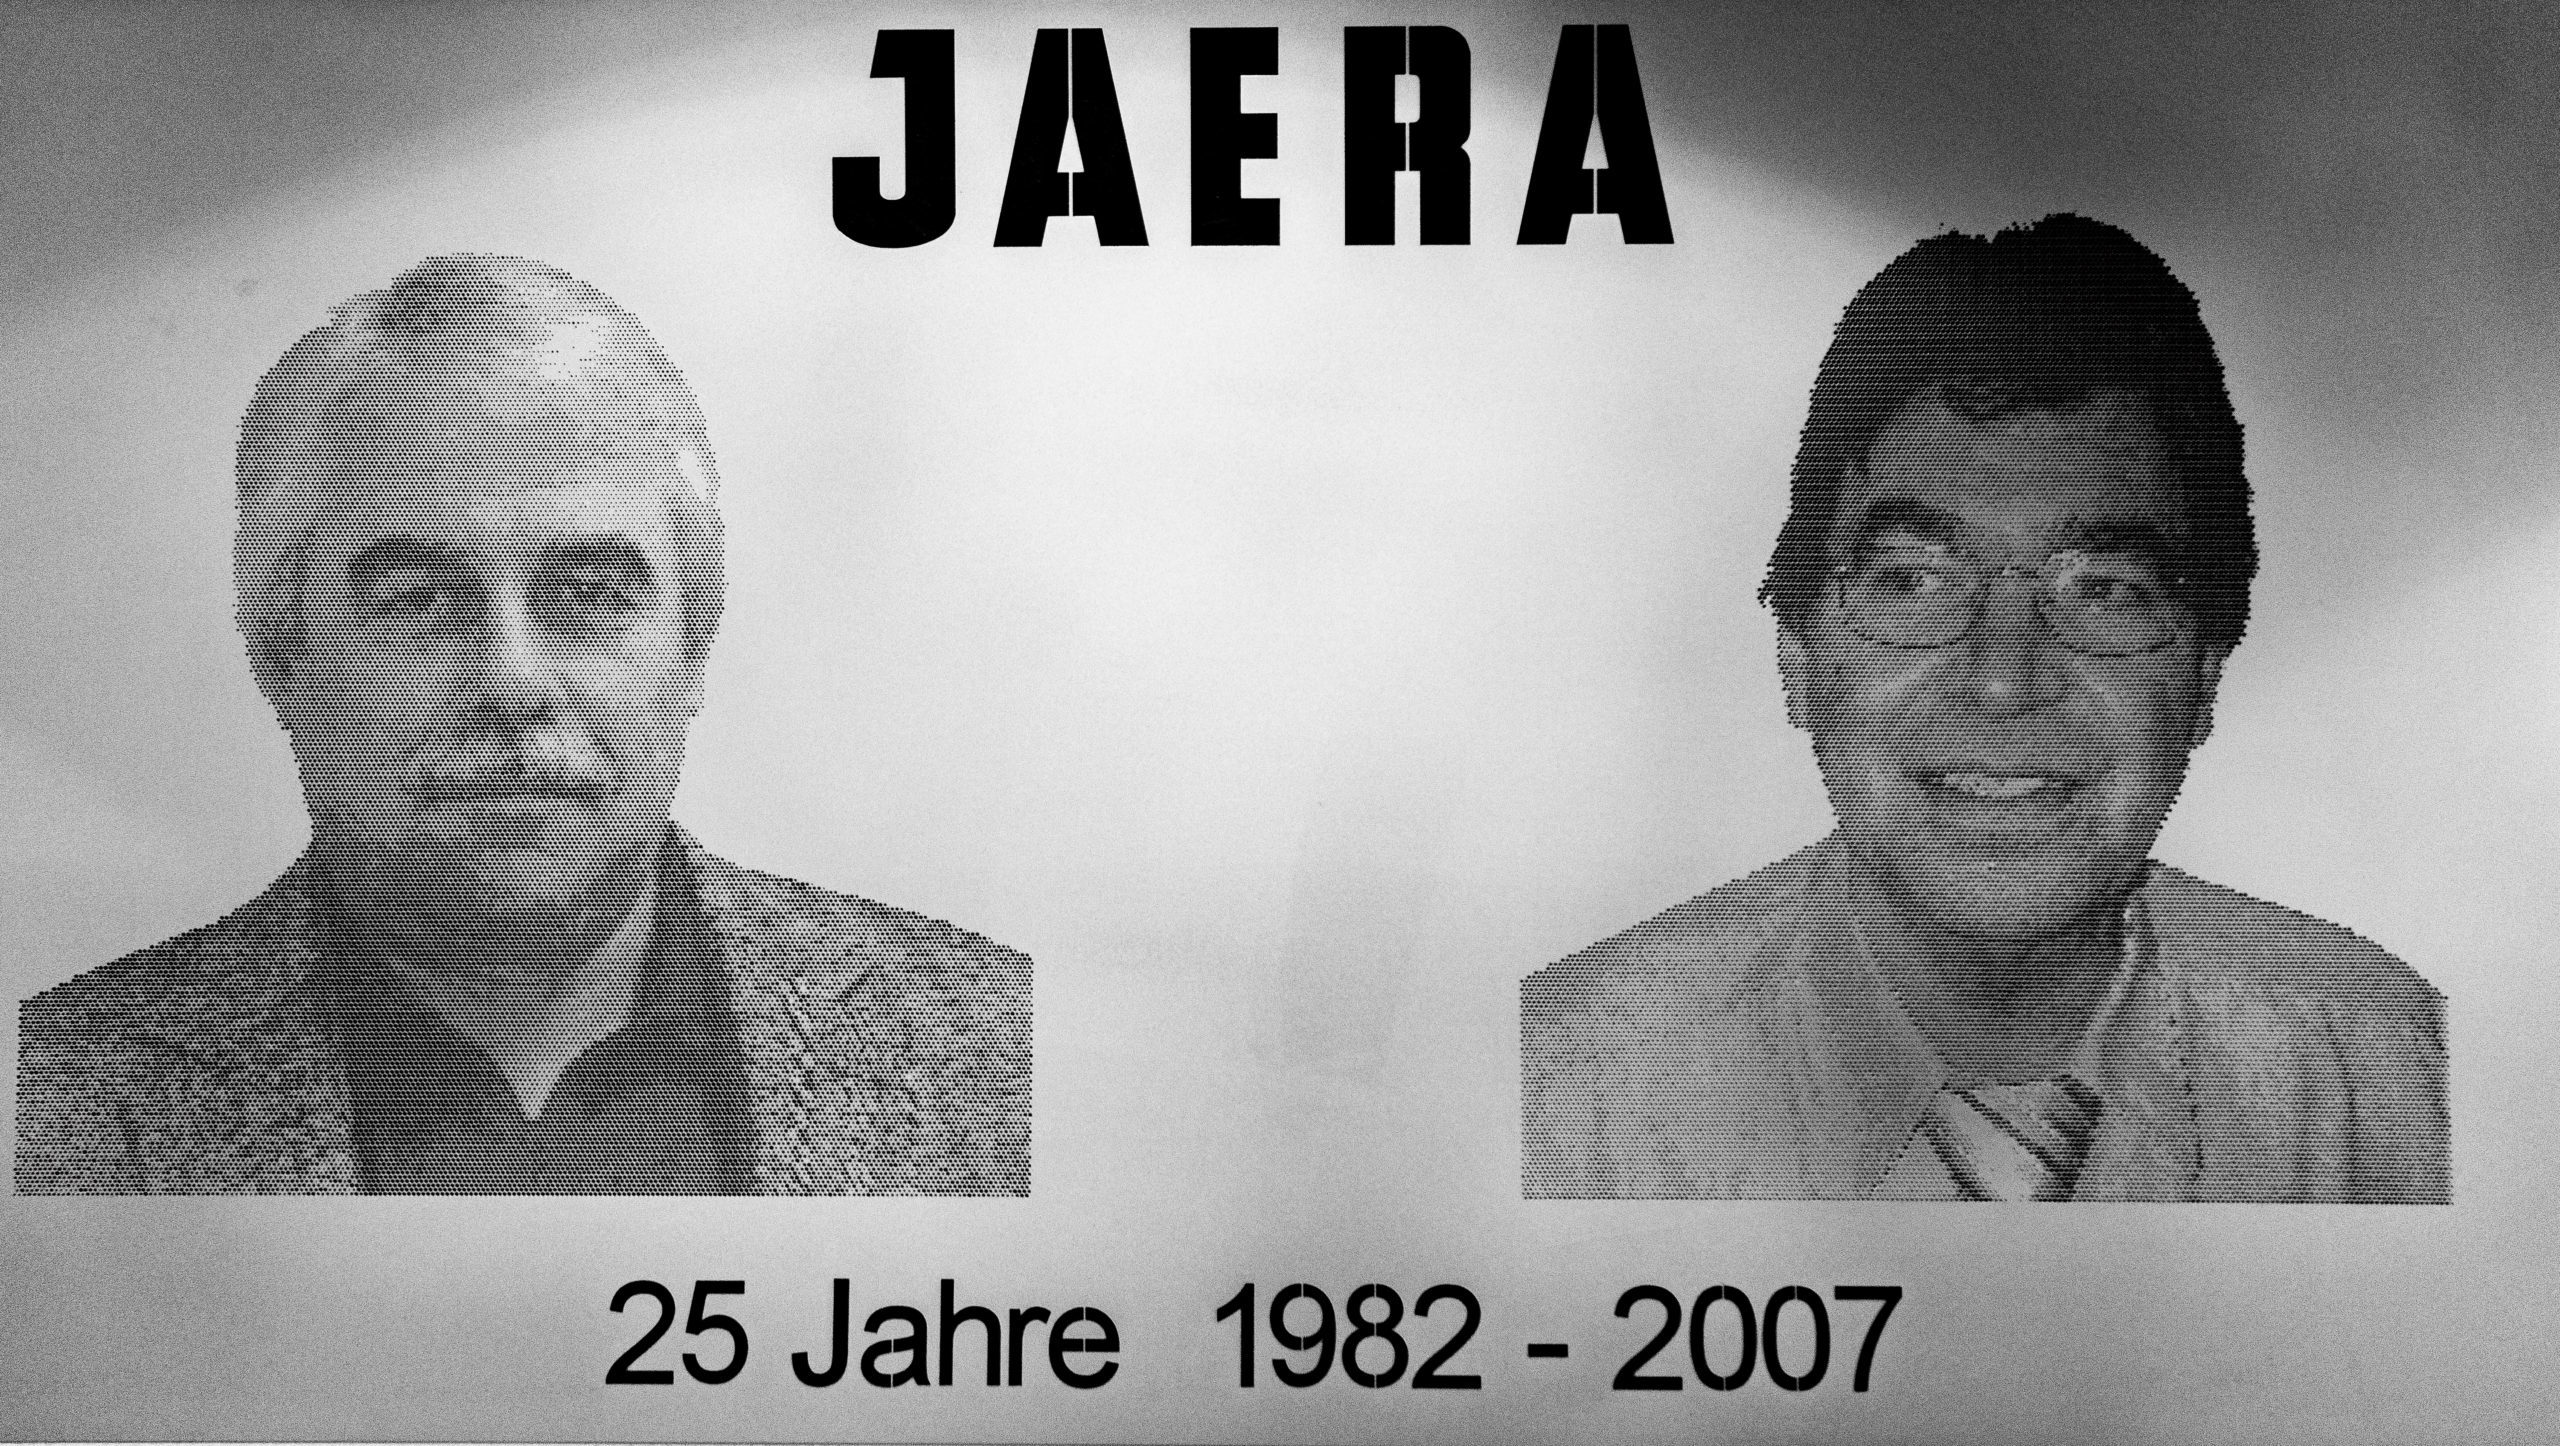 Jaera 25 Jahre Historie